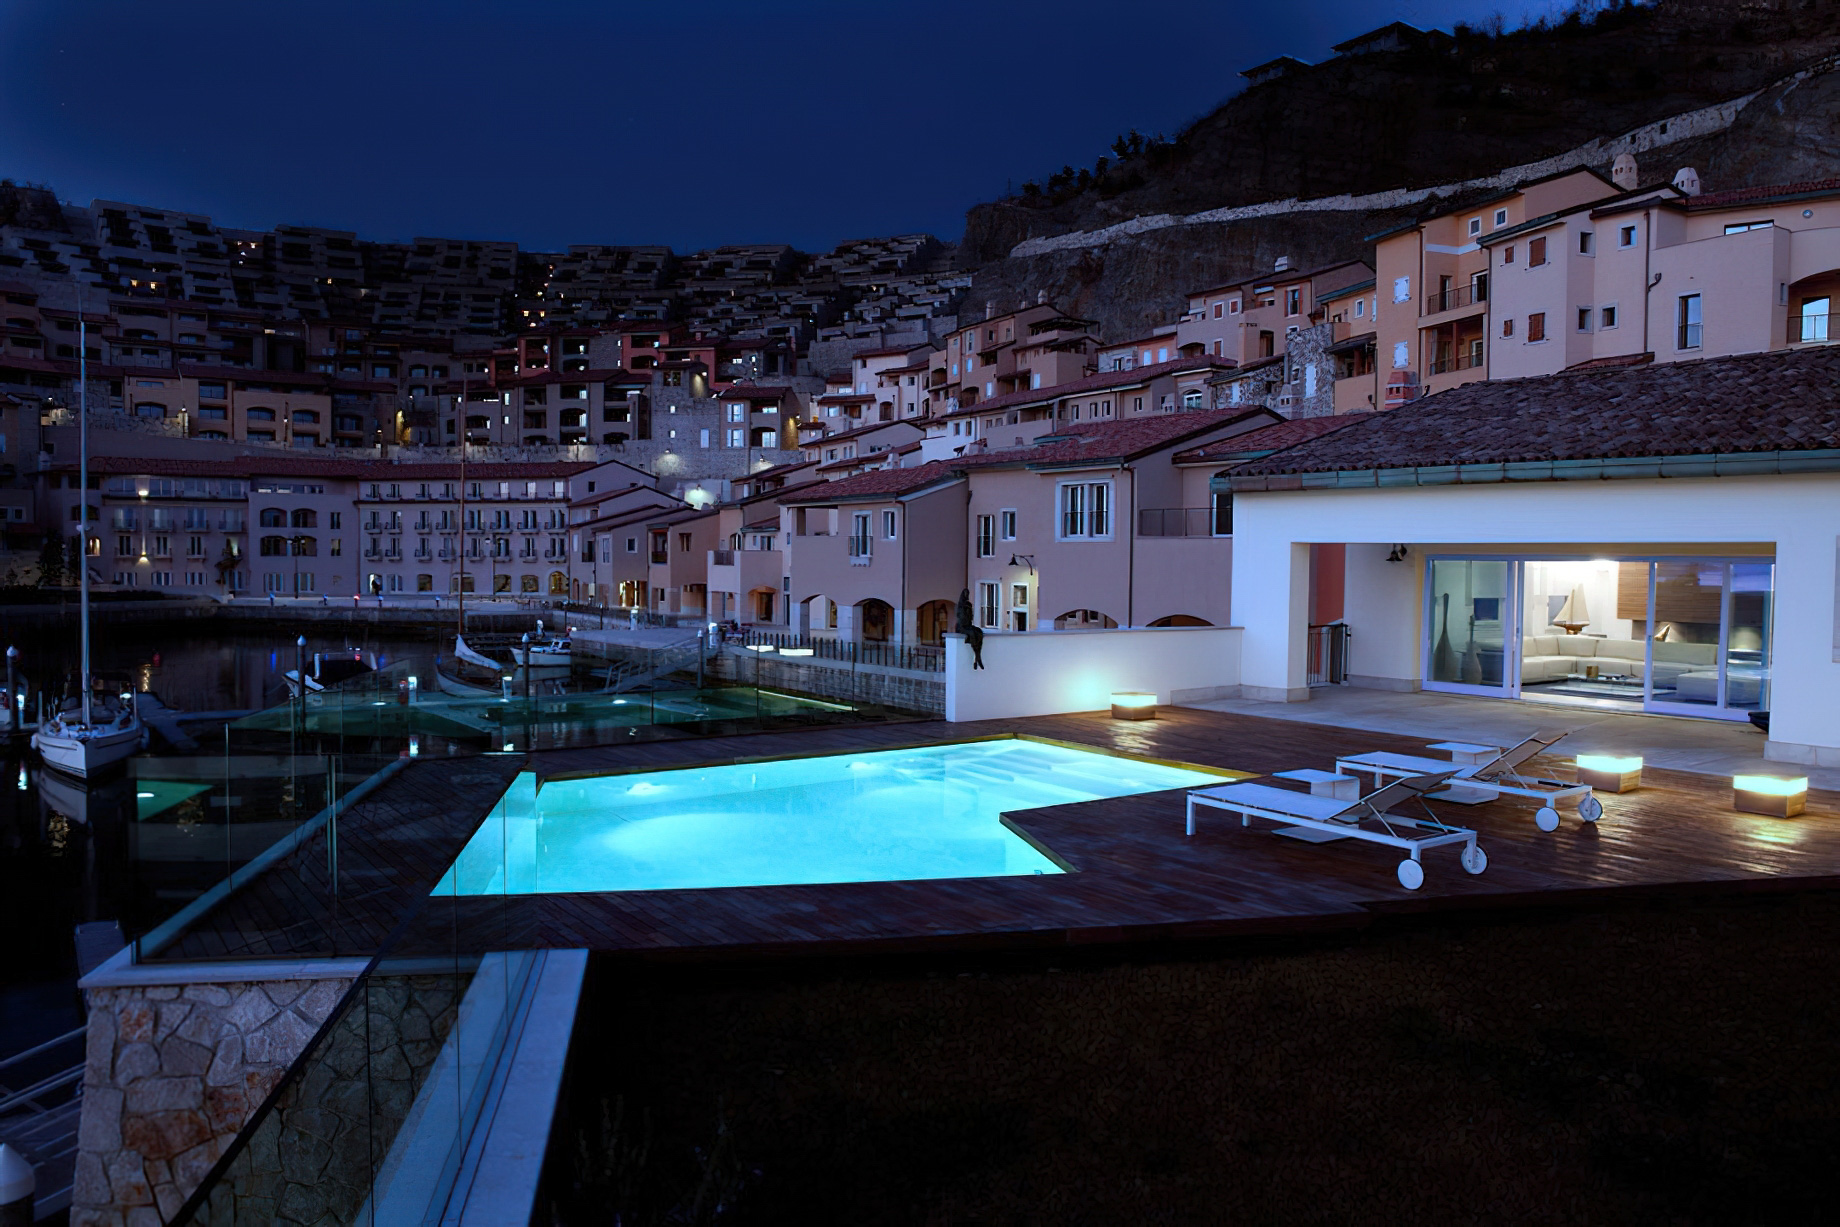 Tivoli Portopiccolo Sistiana Resort & Spa – Sistiana, Italy – Night View